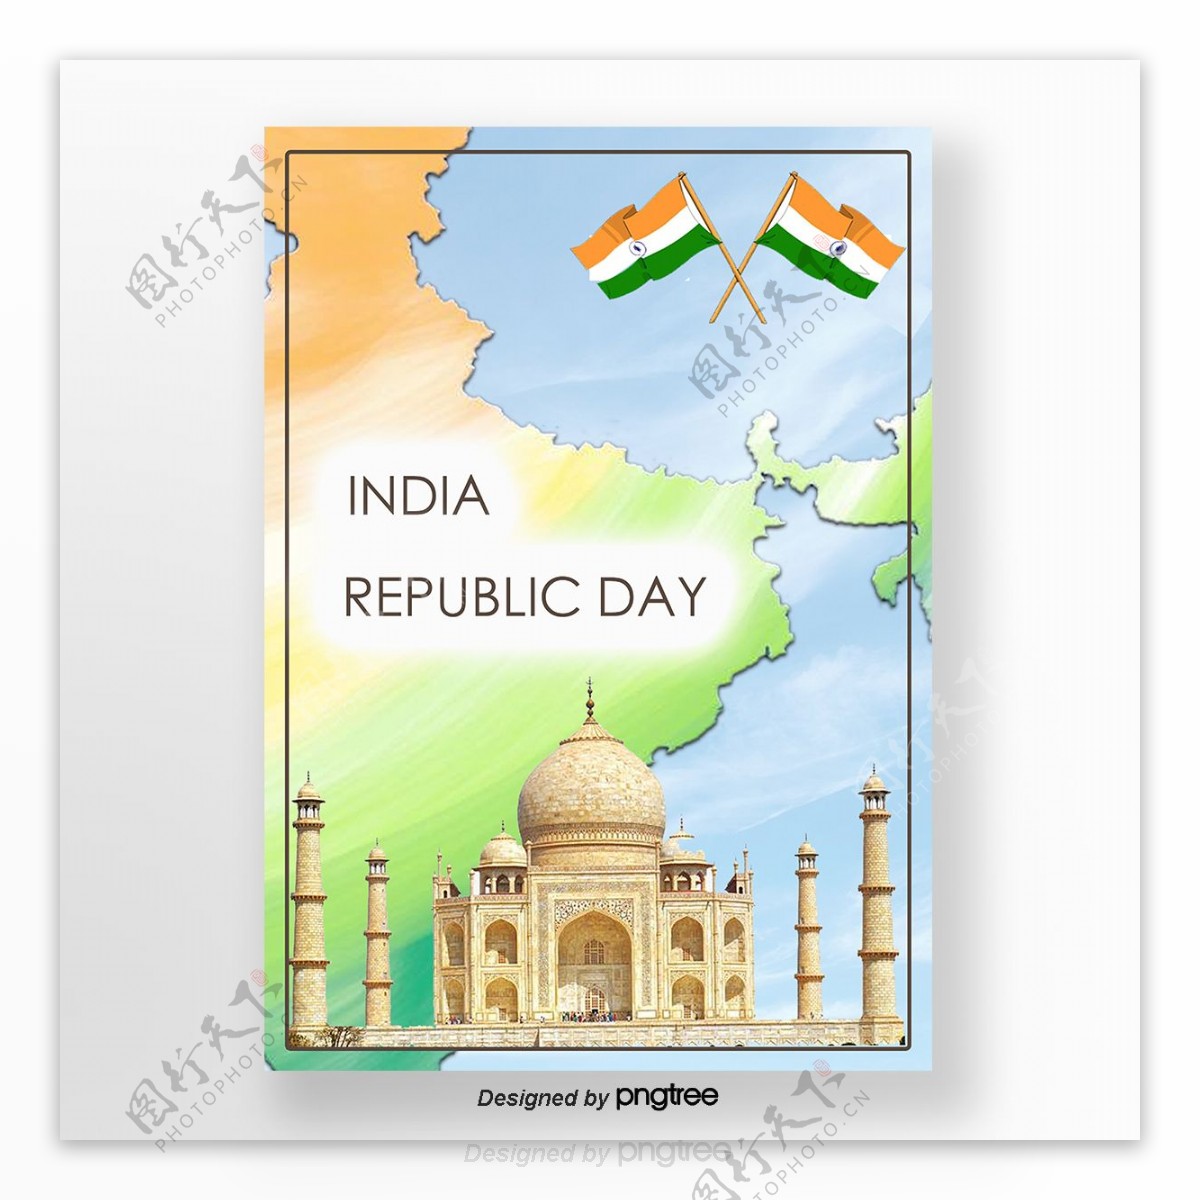 印度日本共和国新鲜和简单的国旗元素海报基地图模板